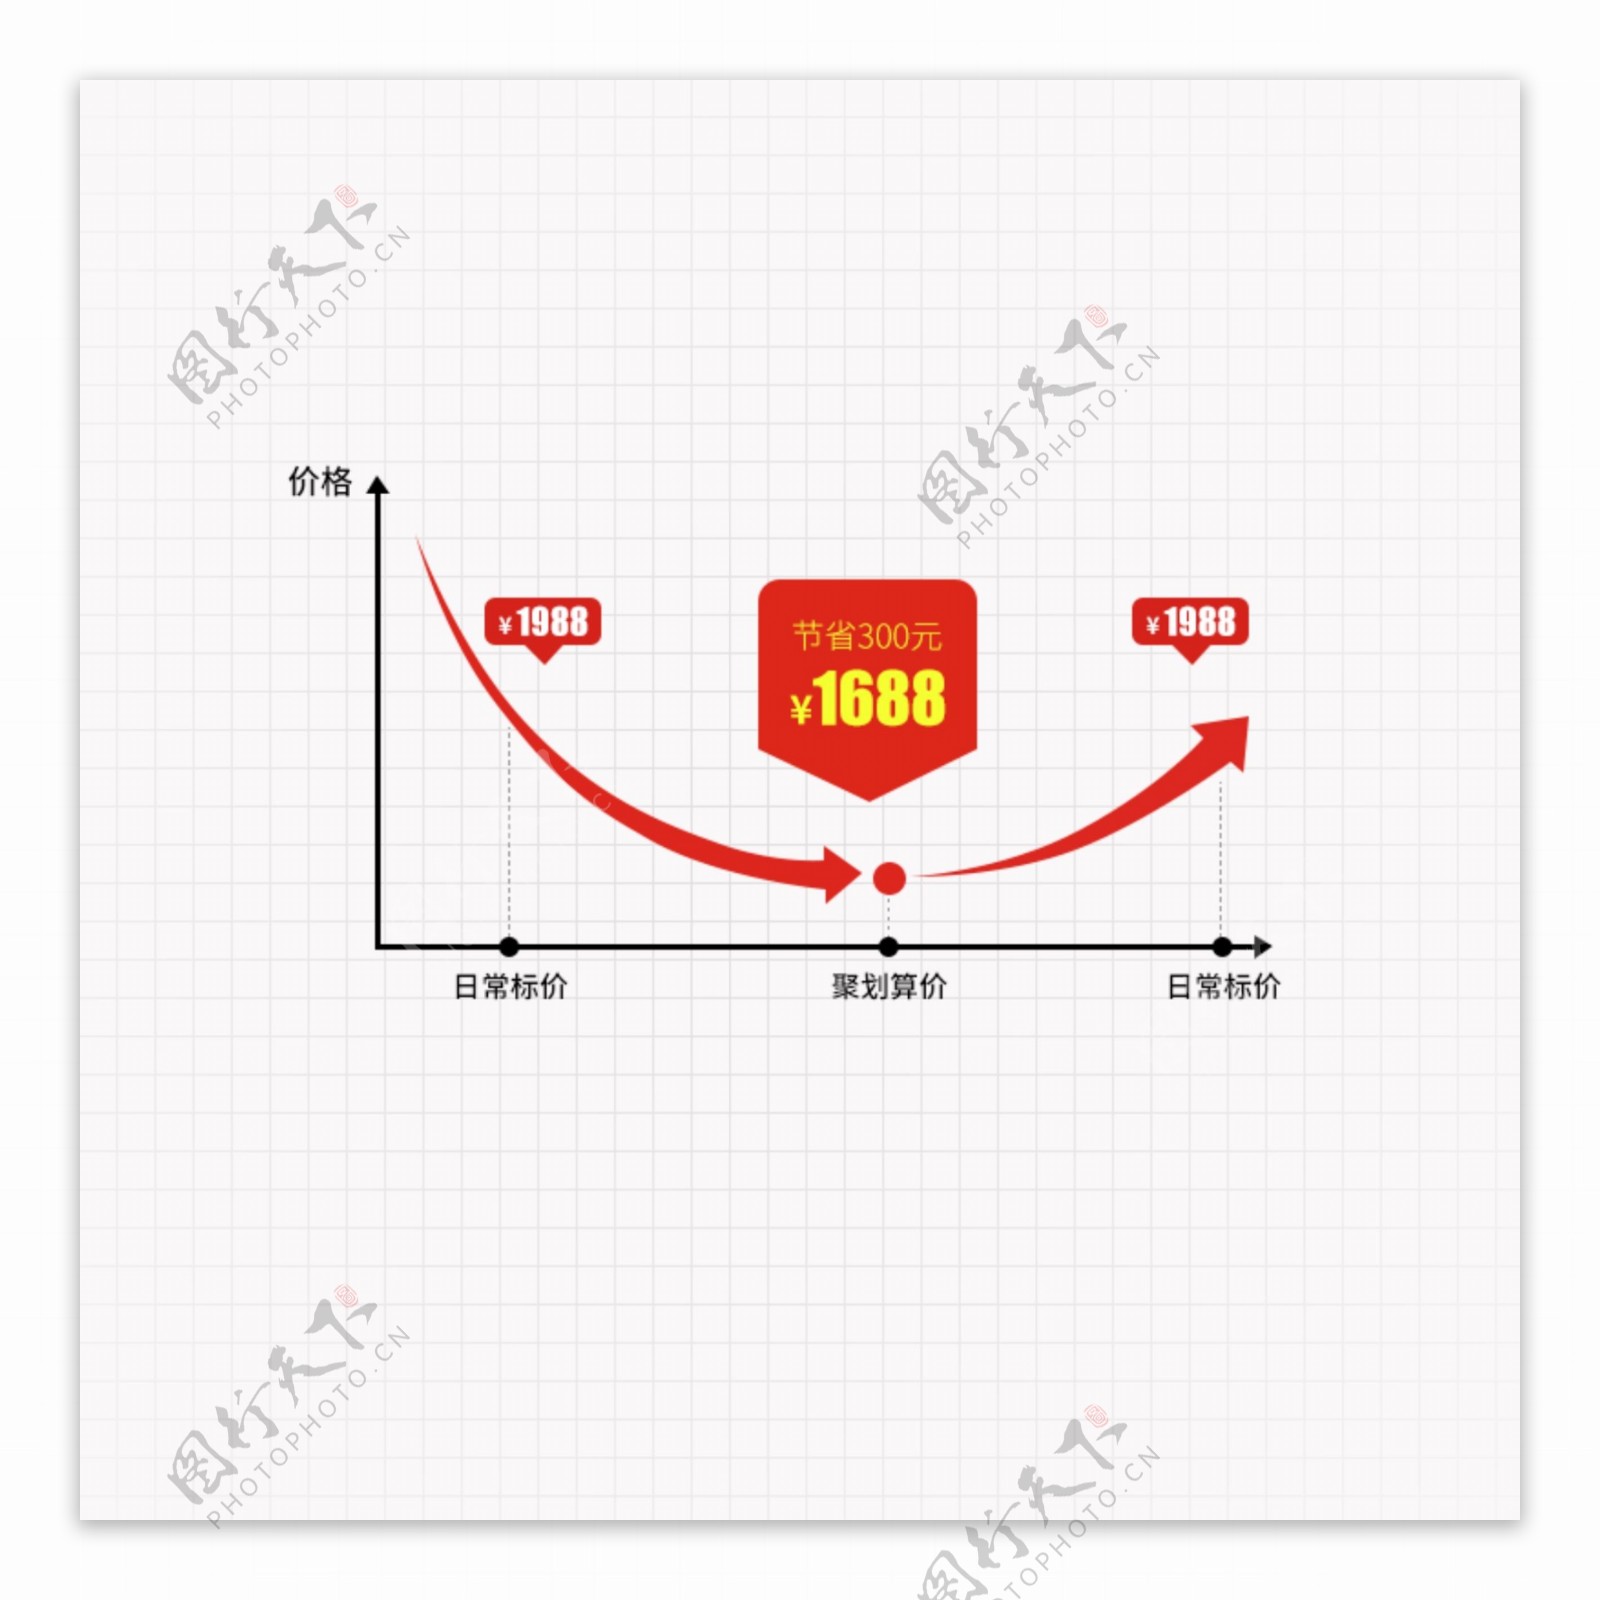 价格趋势曲线图